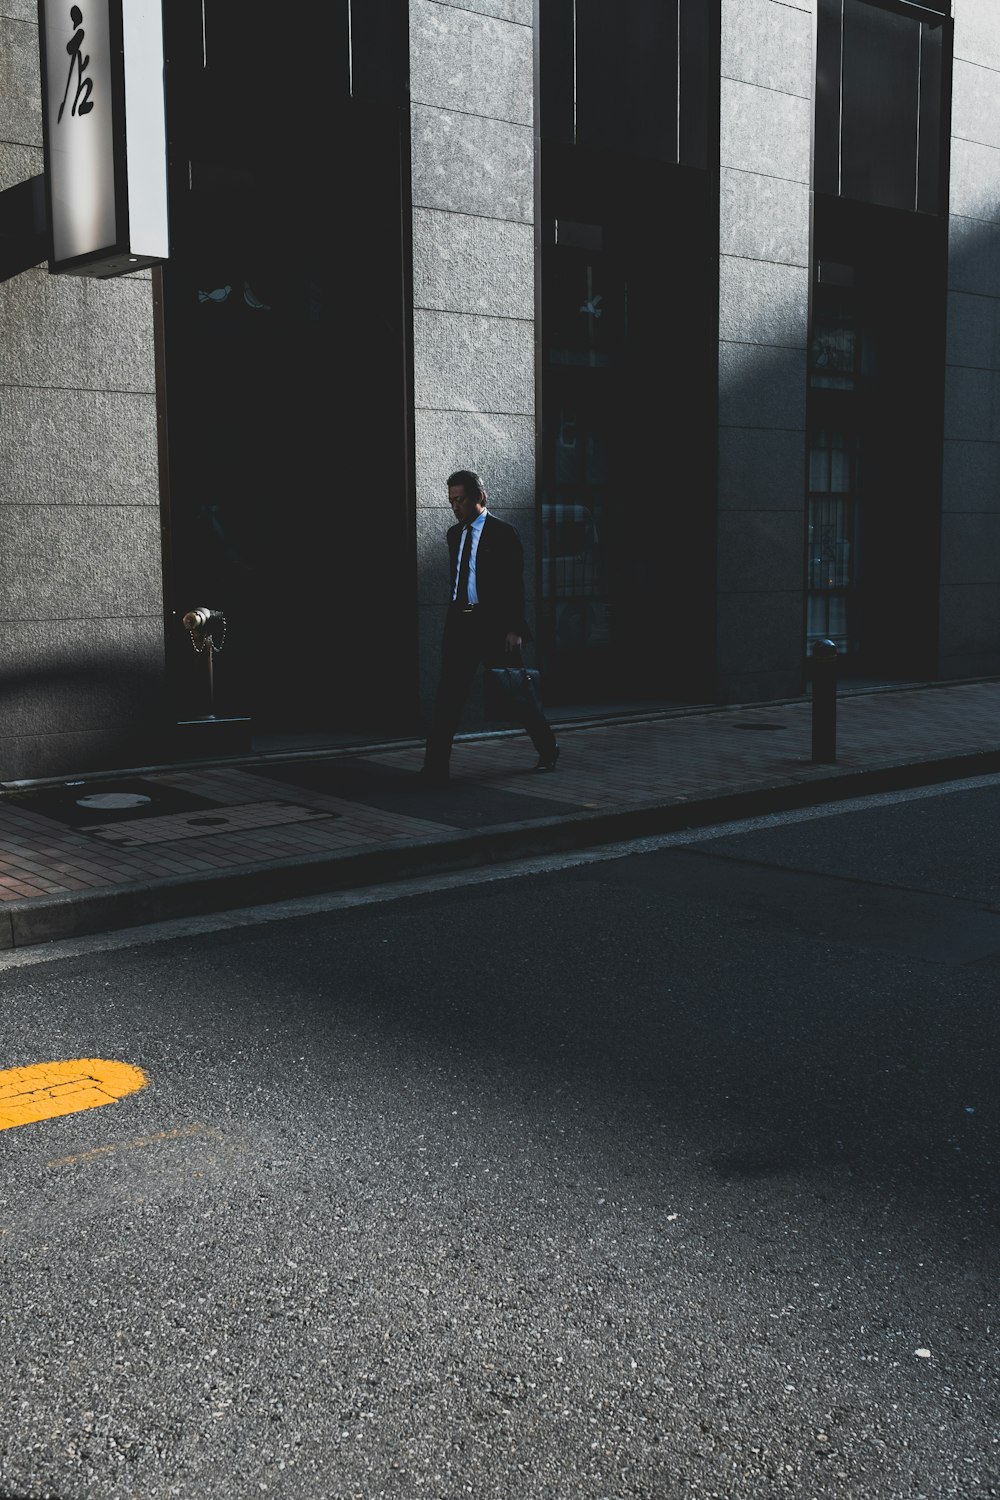 woman wearing suit walking near building during daytime